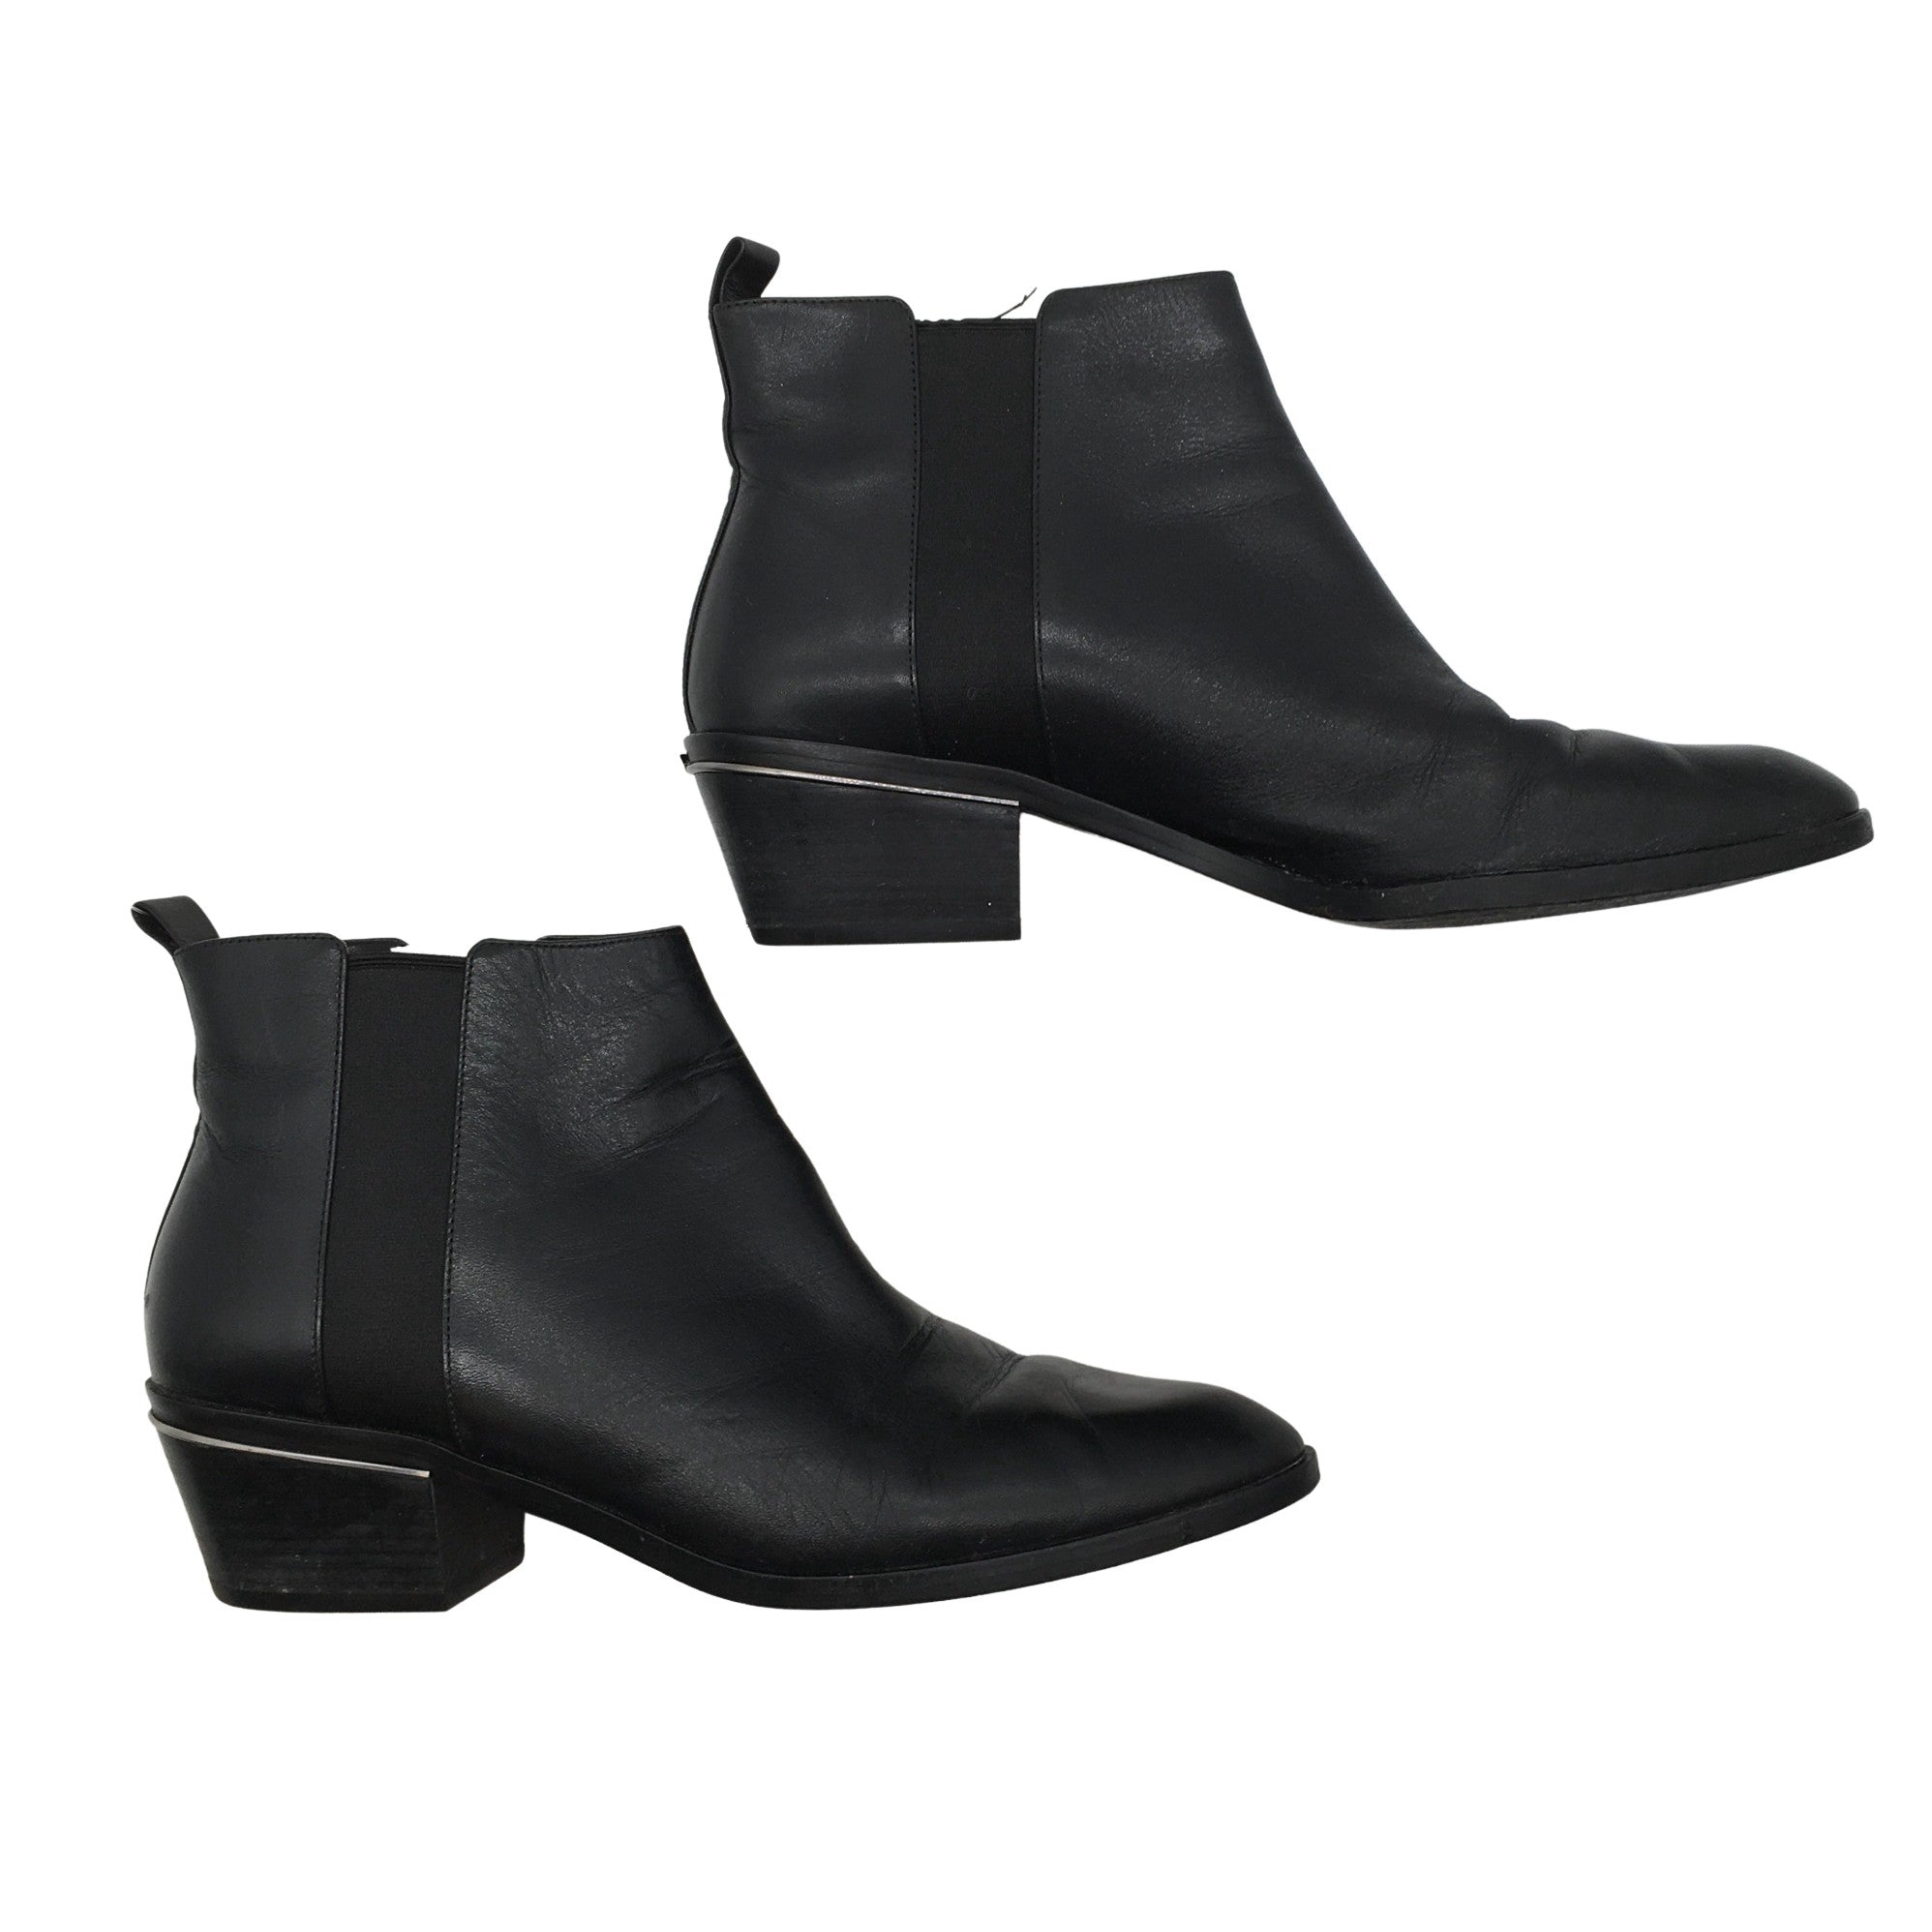 Michael Kors Ankle boots Size 65 Color Acorn Women039s  eBay